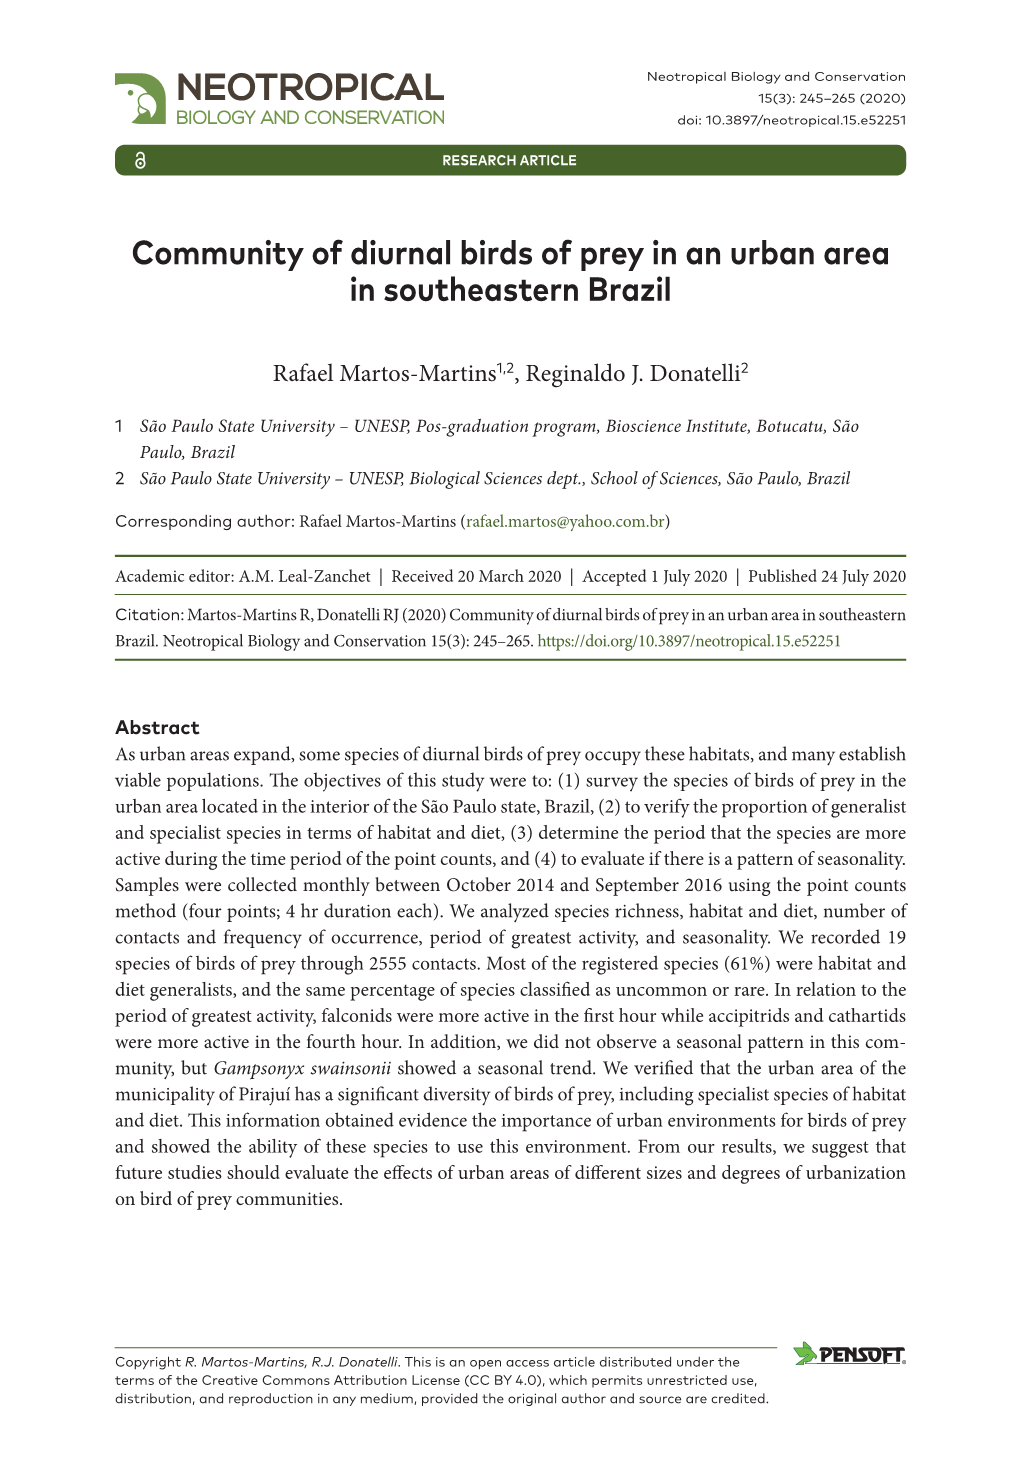 ﻿Community of Diurnal Birds of Prey in an Urban Area in Southeastern Brazil